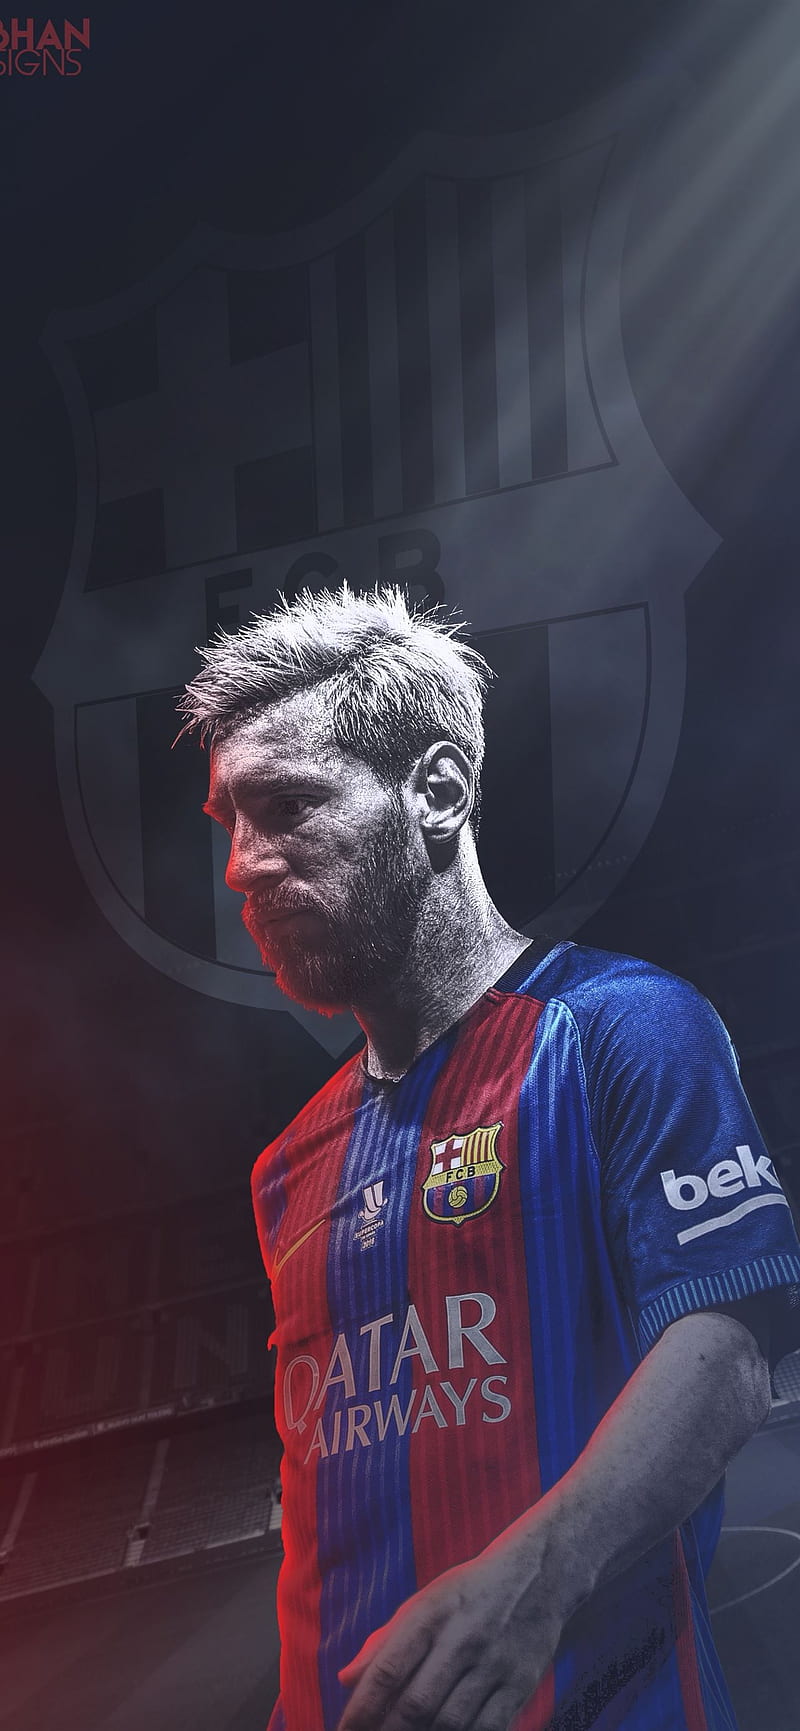 Hình nền Lionel Messi Barcelona trên iPhone sẽ làm bạn lưu giữ được kỷ niệm của những ngày đẹp nhất! Hãy xem ngay những tấm hình nền Messi Barcelona iPhone này để cảm nhận được sức mạnh của tình yêu với Barca và với cầu thủ vĩ đại này!